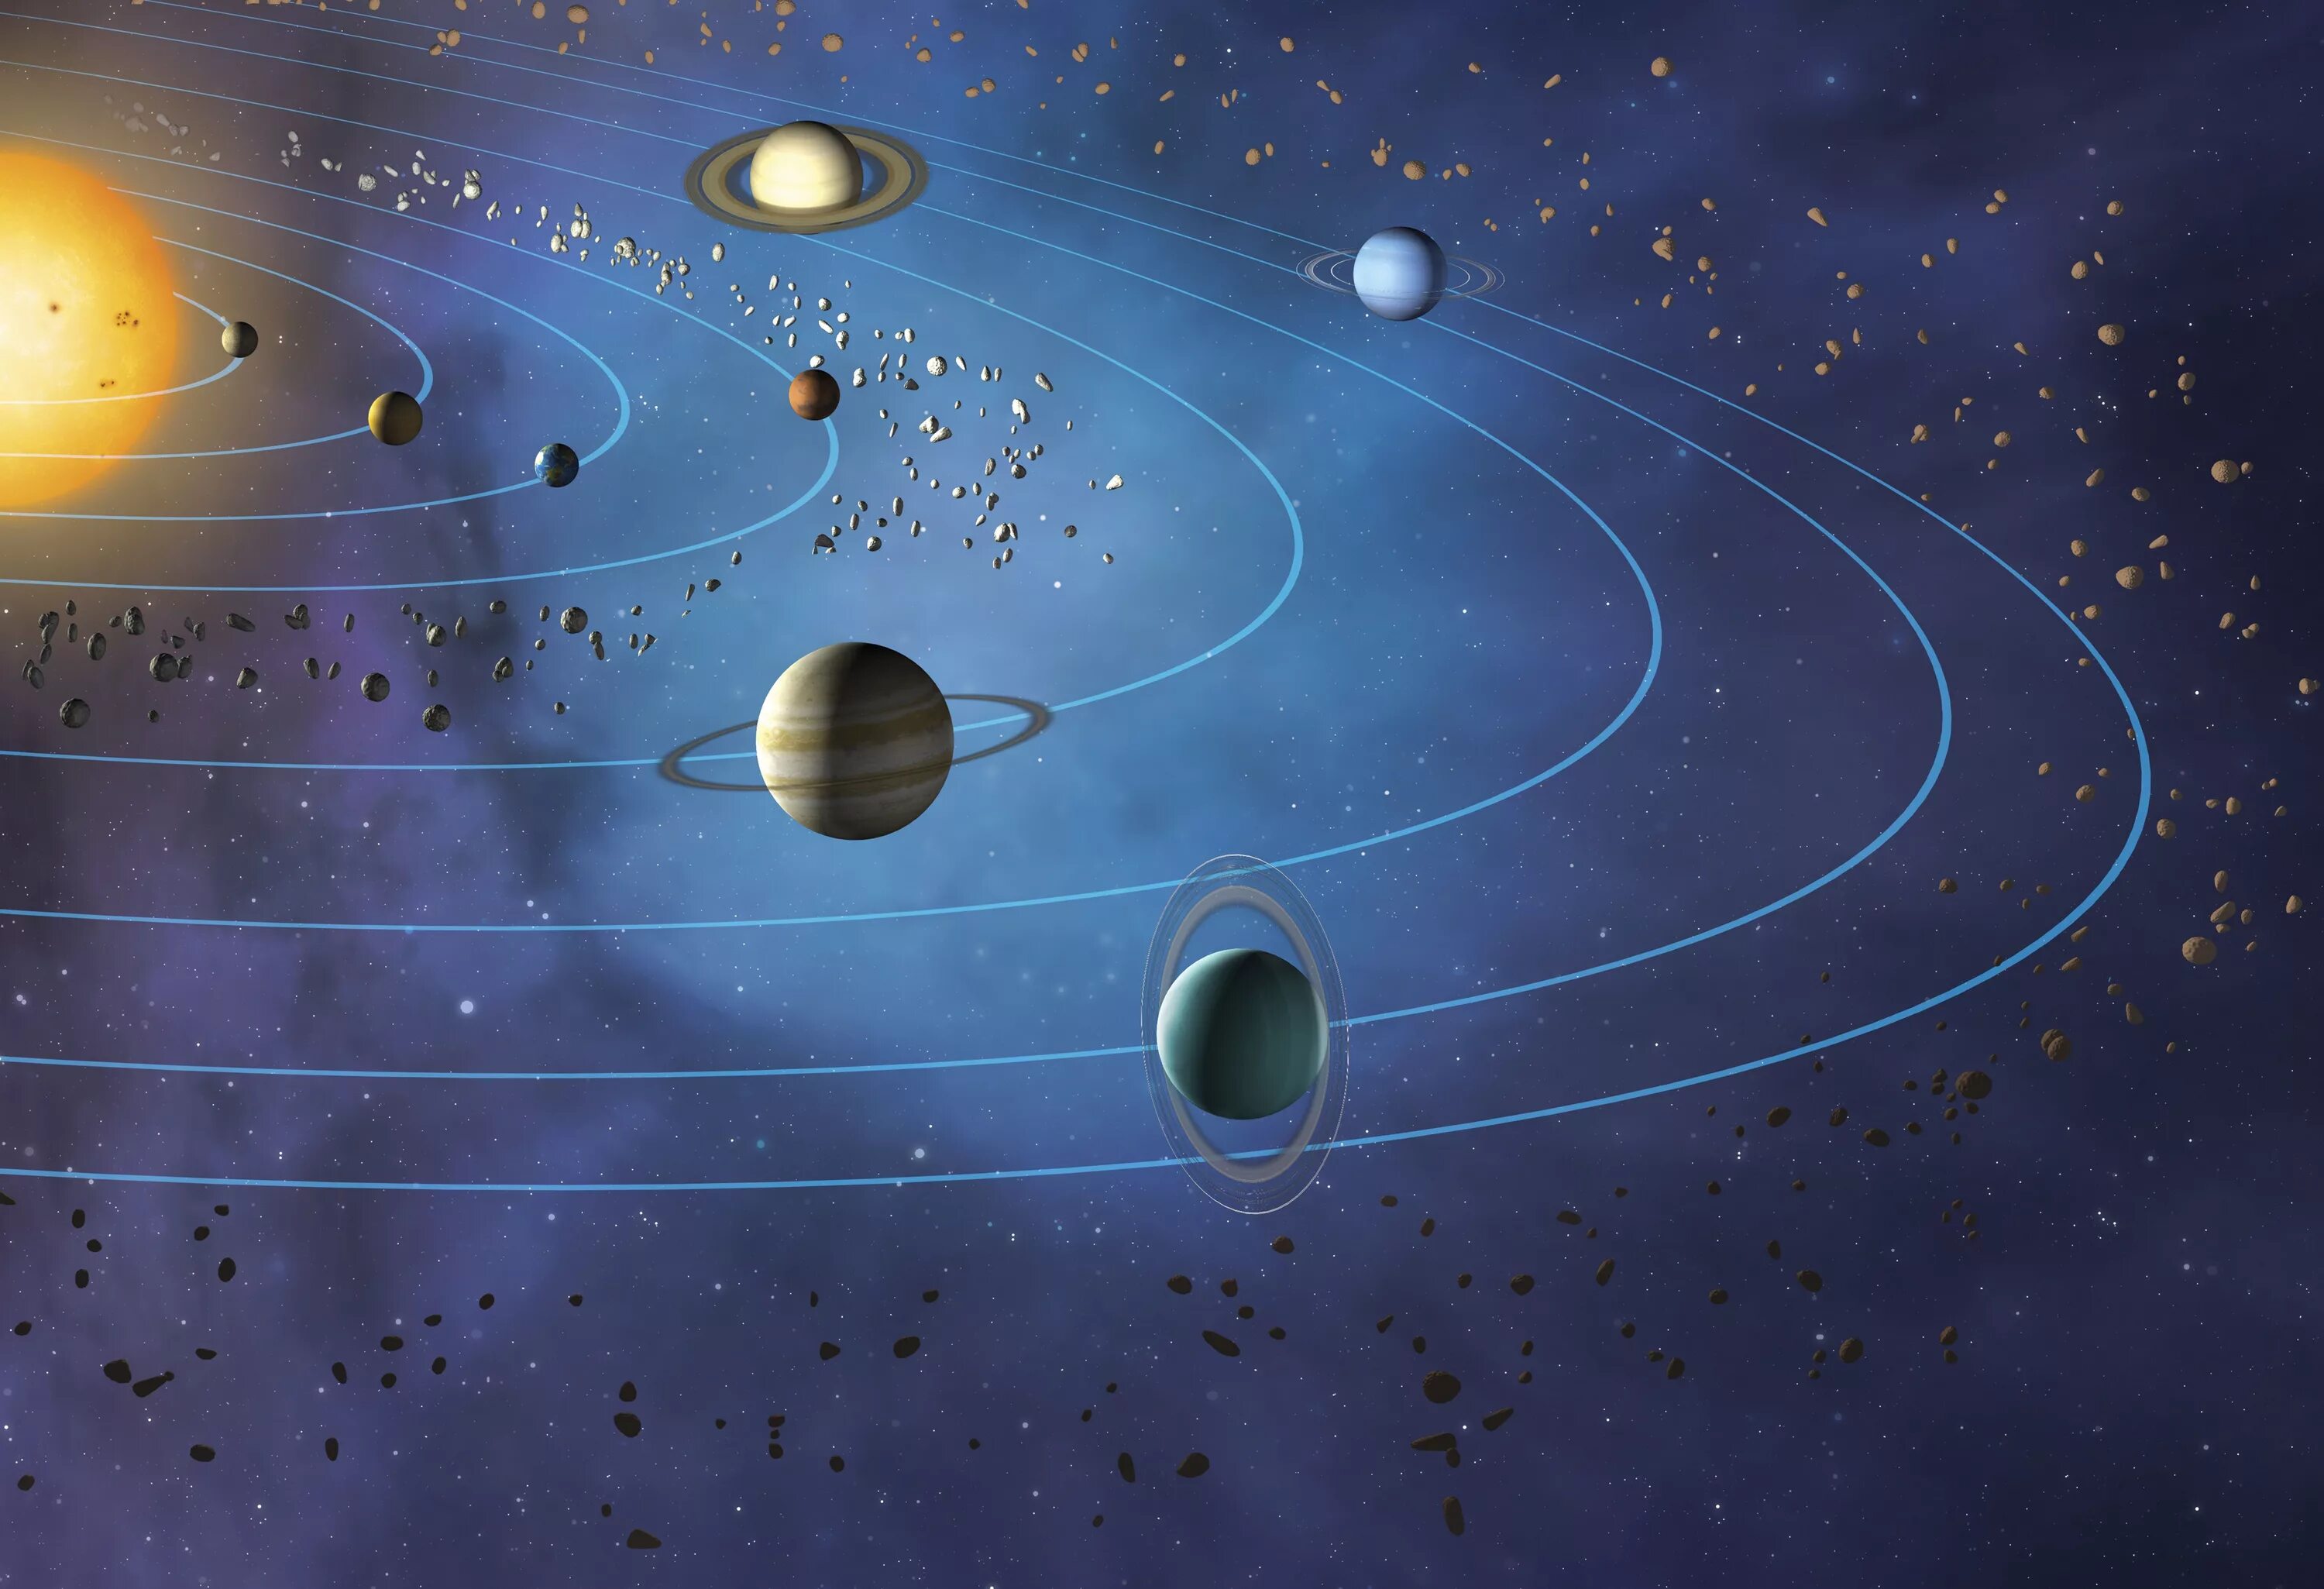 Самый длинный год в солнечной системе. Солнечная система. Планет солнечной системы. Планеты с орбитами. Планеты вокруг солнца.